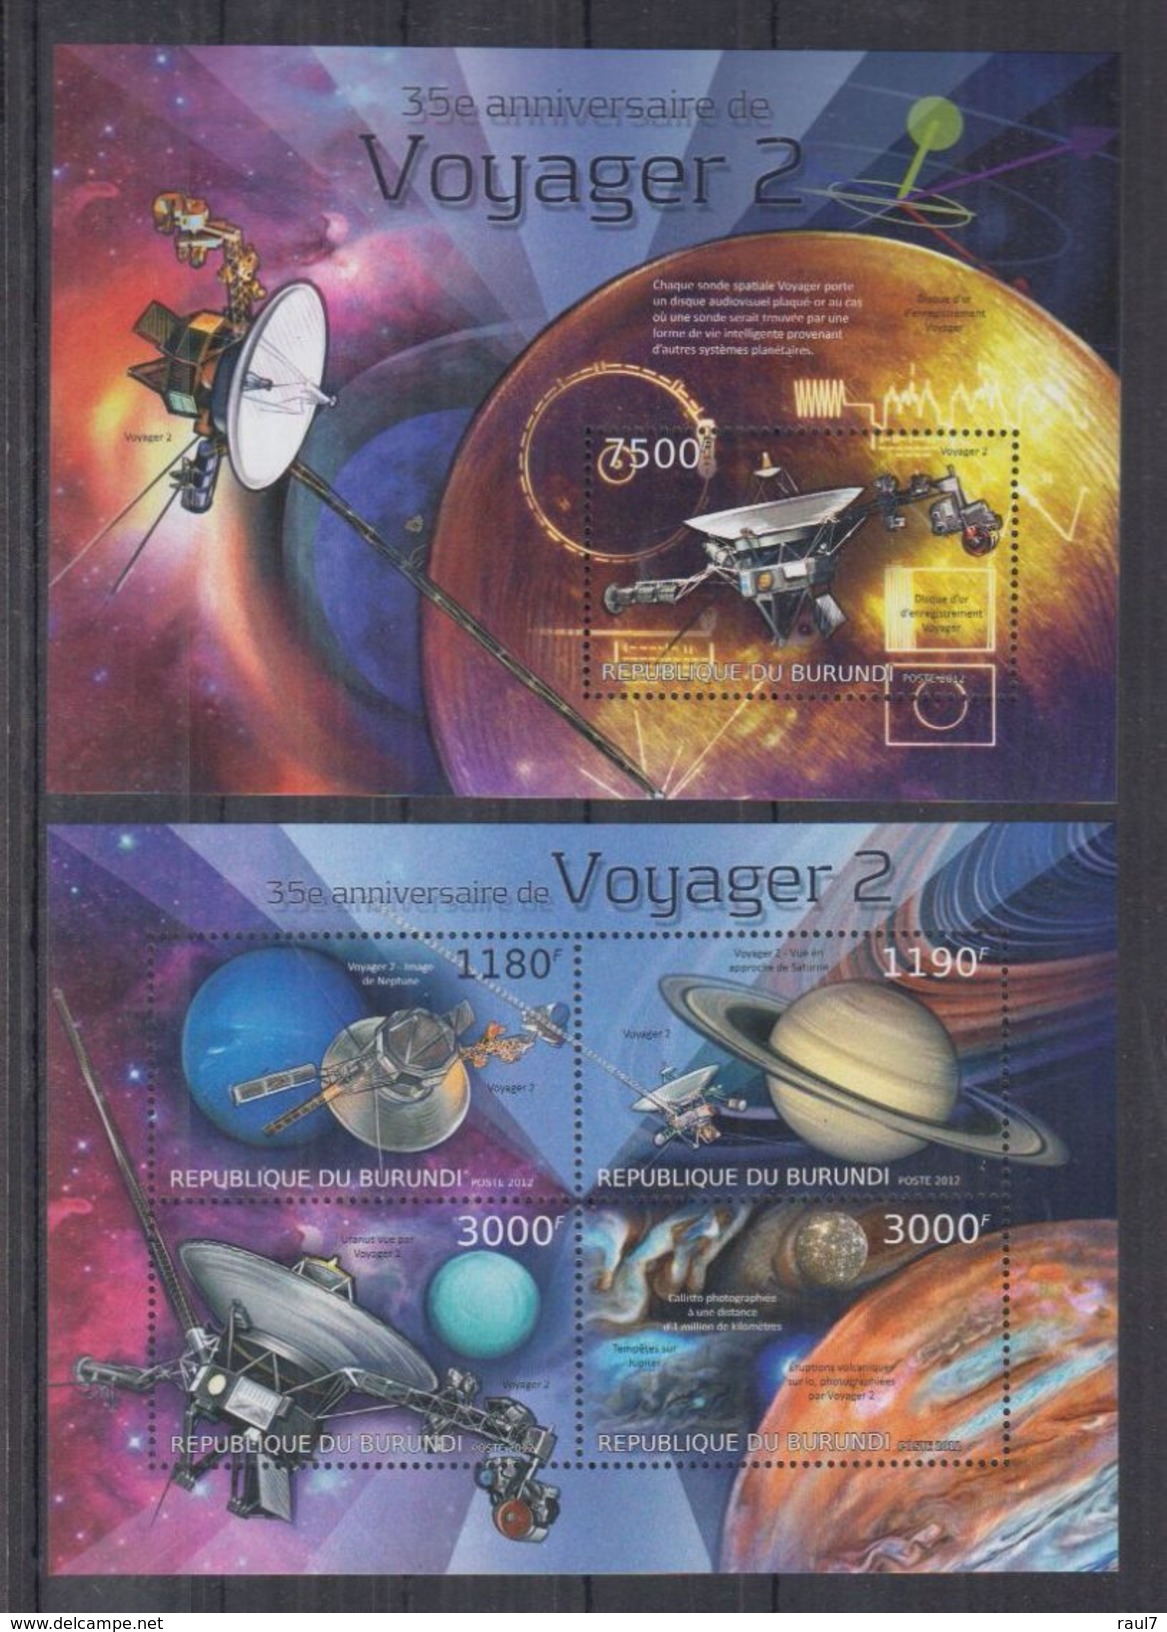 BURUNDI 2012 - Astronomie, Satellites, Voyager 2 - Feuillet 4 Val + BF Neufs // Mnh // CV 36.00 Euros - Neufs